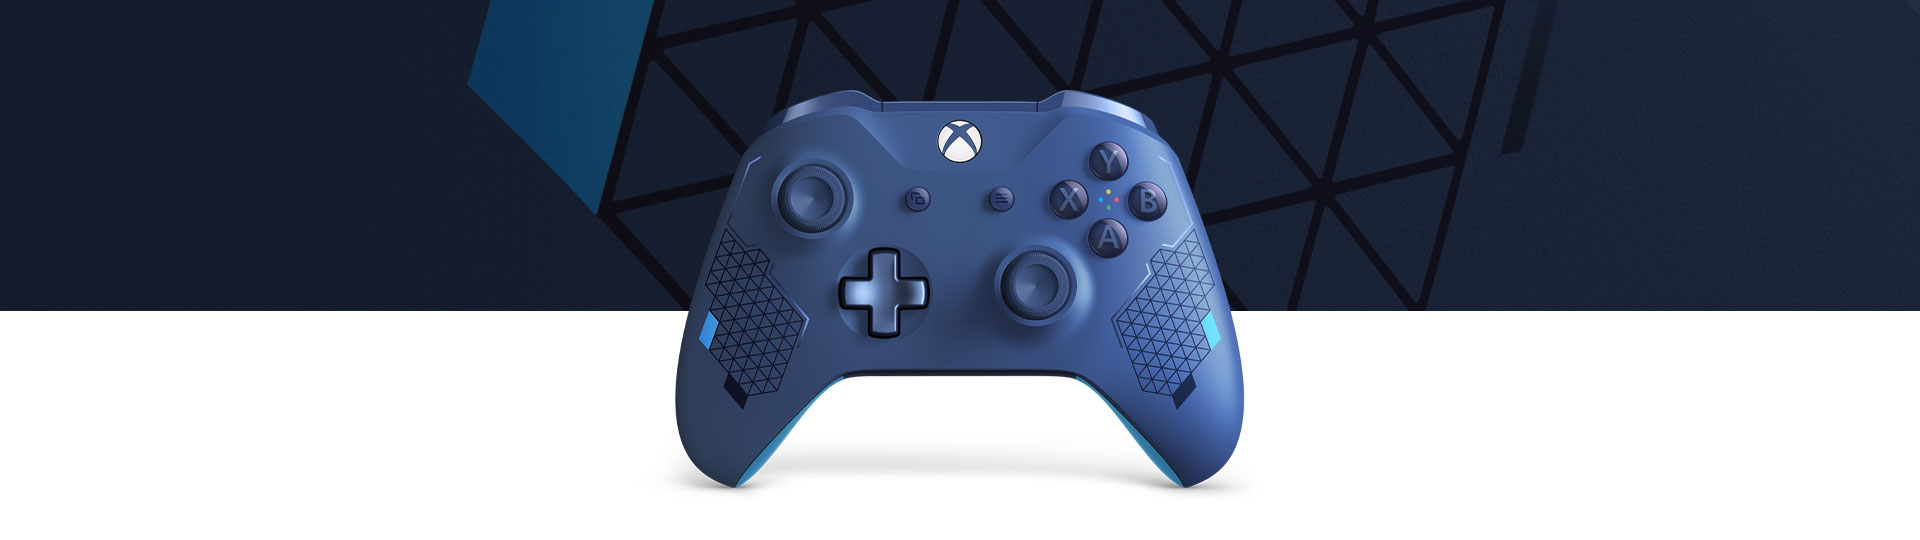 Xbox 无线控制器 - 动感蓝特别版正面图，动感蓝控制器表面纹理的特写镜头